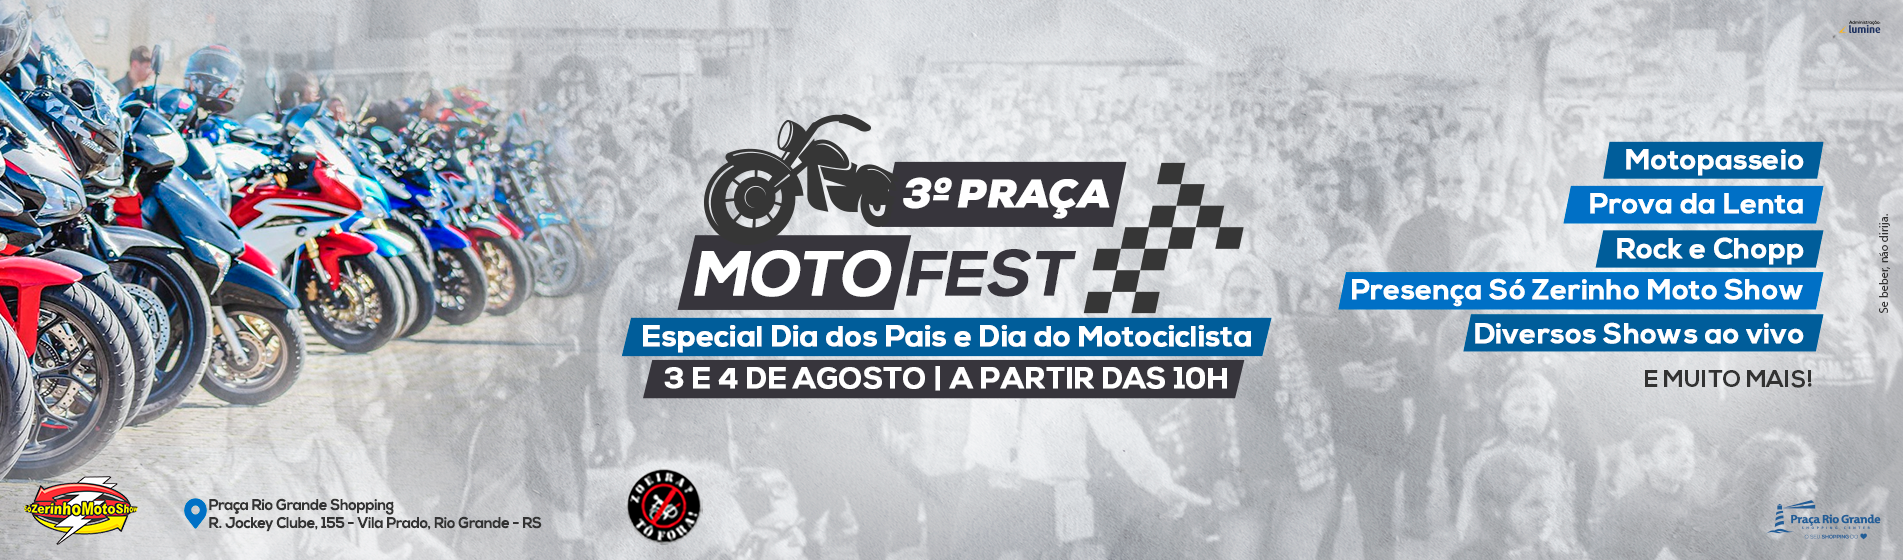 3 Praça MotoFest - Especial Dia dos Pais e Dia do Motociclista - Dias 3 e 4 de agosto